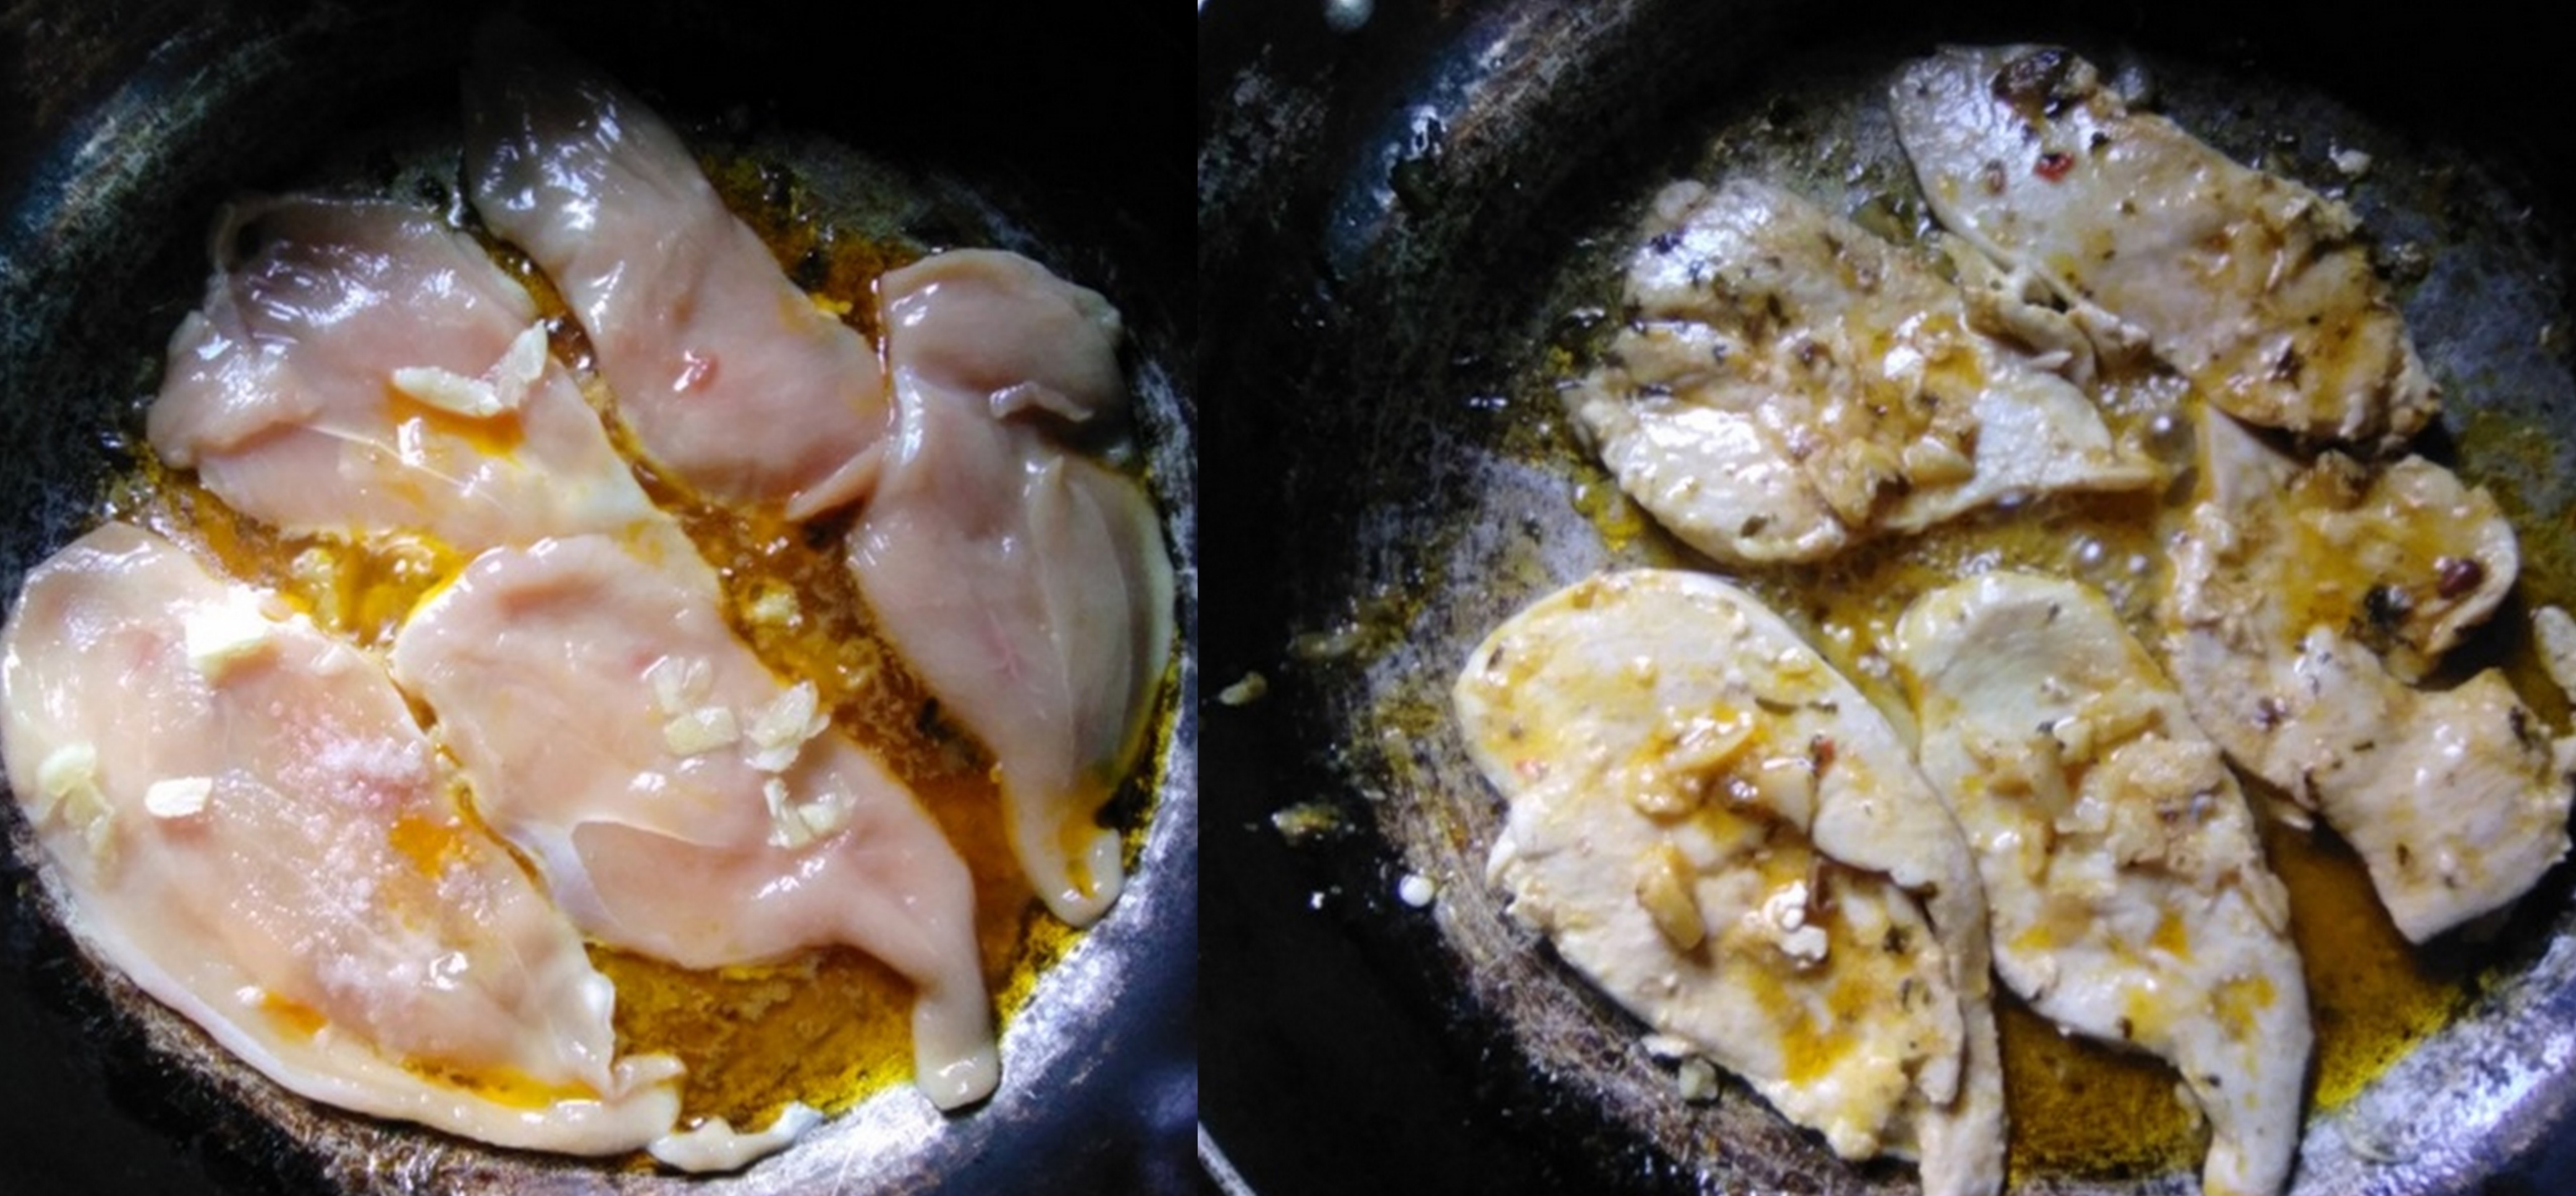 pollo a la sarten con pasta bernjena y calabacin ARREGLADAS4.jpg